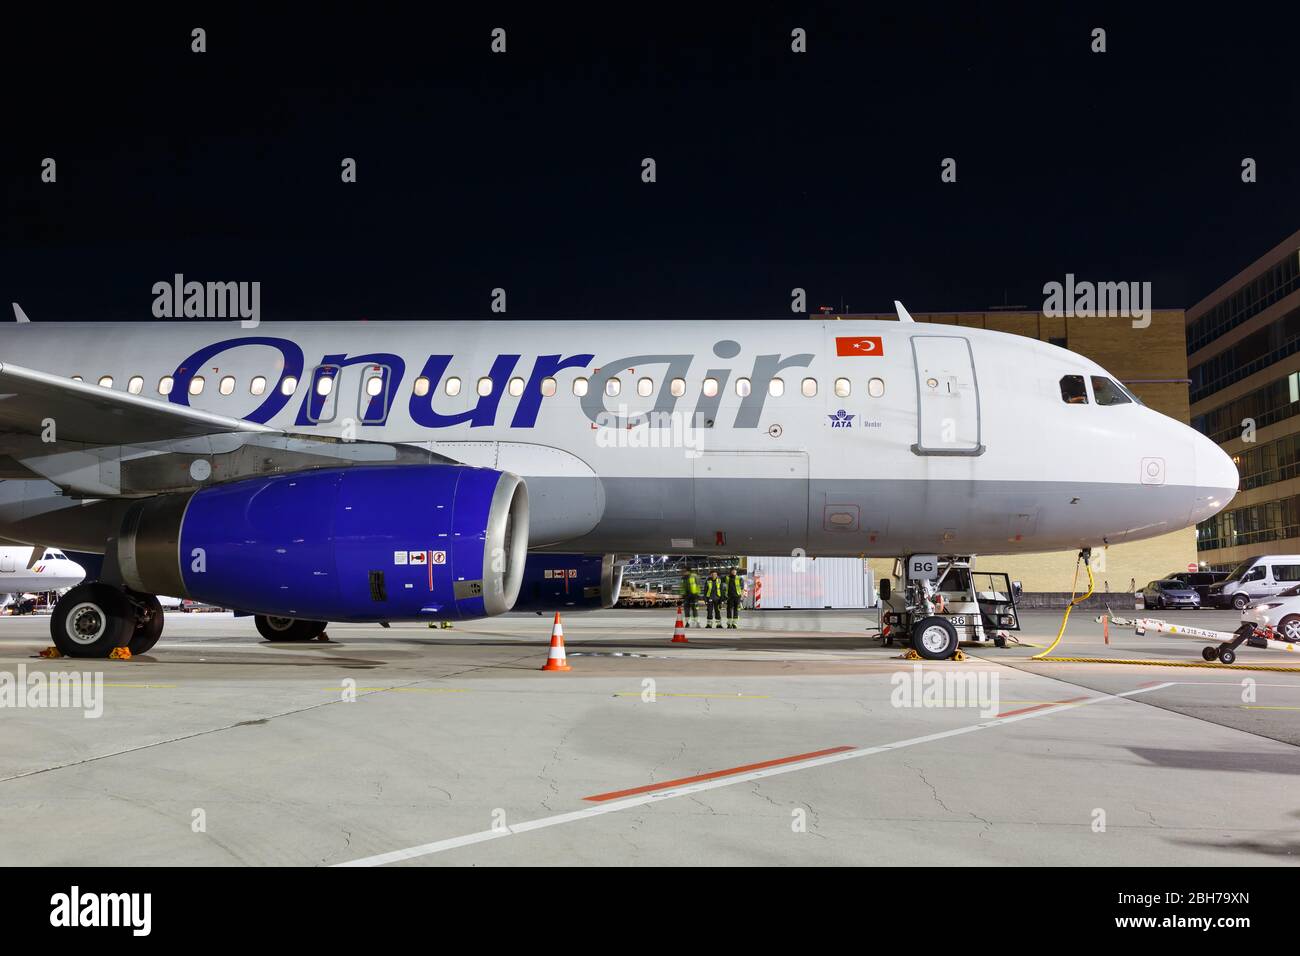 Stuttgart, Alemania – 6 de diciembre de 2019: Avión Onur Air Airbus A320 en el aeropuerto de Stuttgart (STR) en Alemania. Airbus es un fabricante europeo de aviones Foto de stock